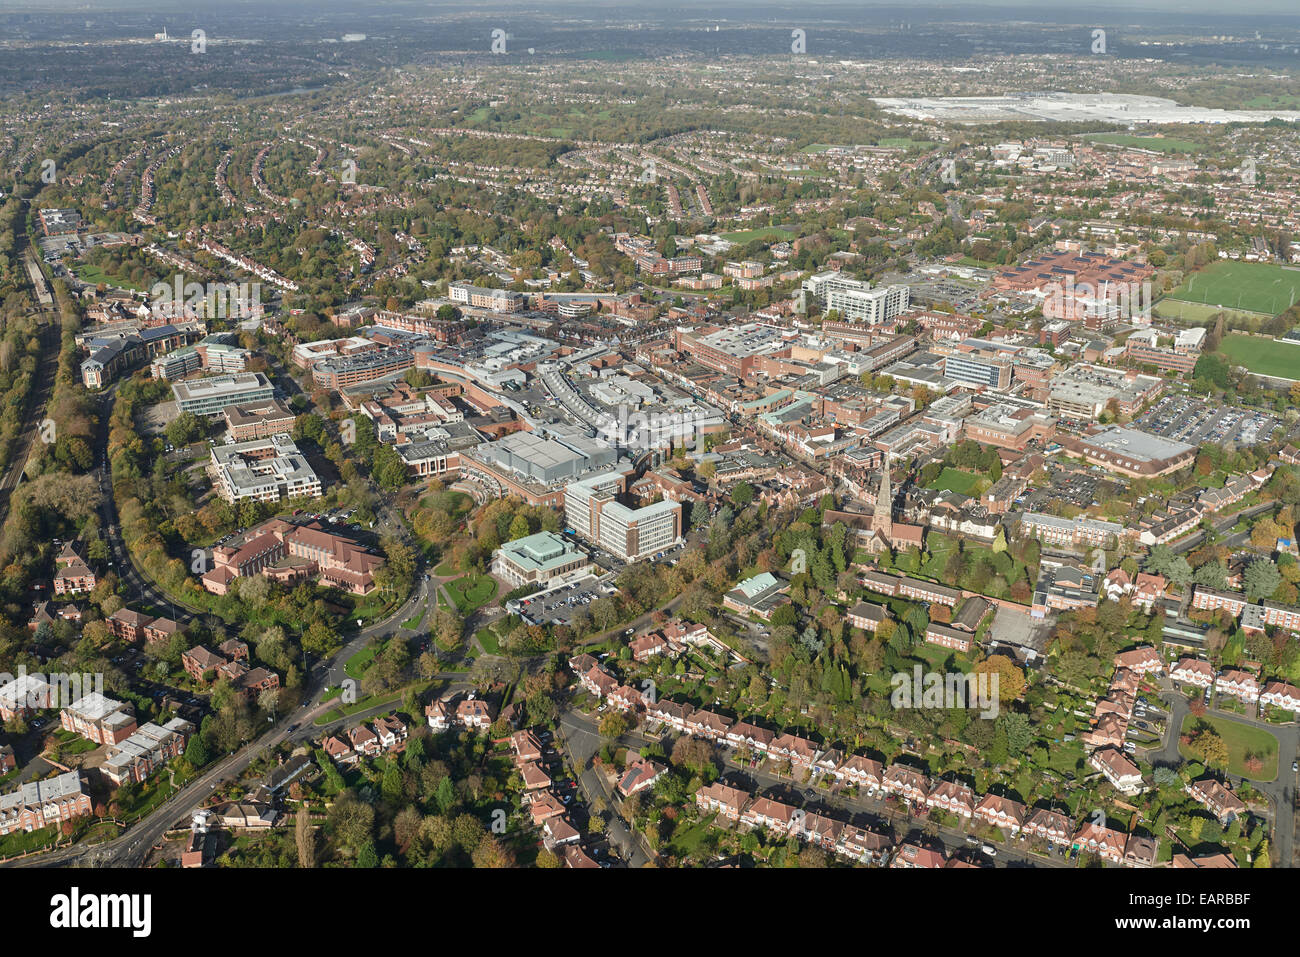 Una vista aérea del centro de Solihull, una ciudad en la región de West Midlands Foto de stock